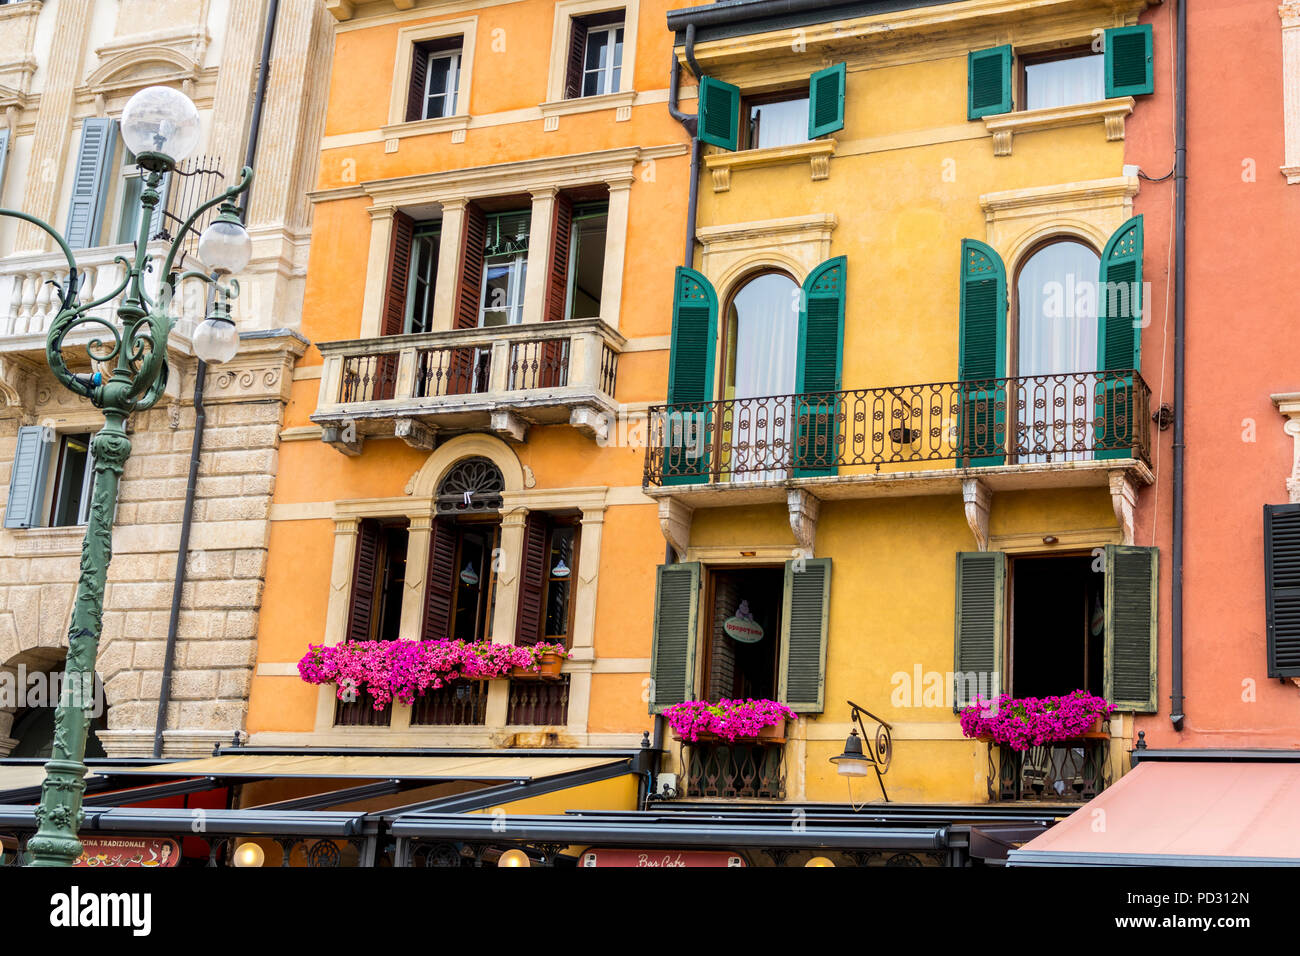 Mehrfarbige, bunte Balkone, Veranden, Fensterläden, Altstadt italienische Architektur Verona Italien gelbe Wände Balkon shutter verzierten traditionellen Stockfoto